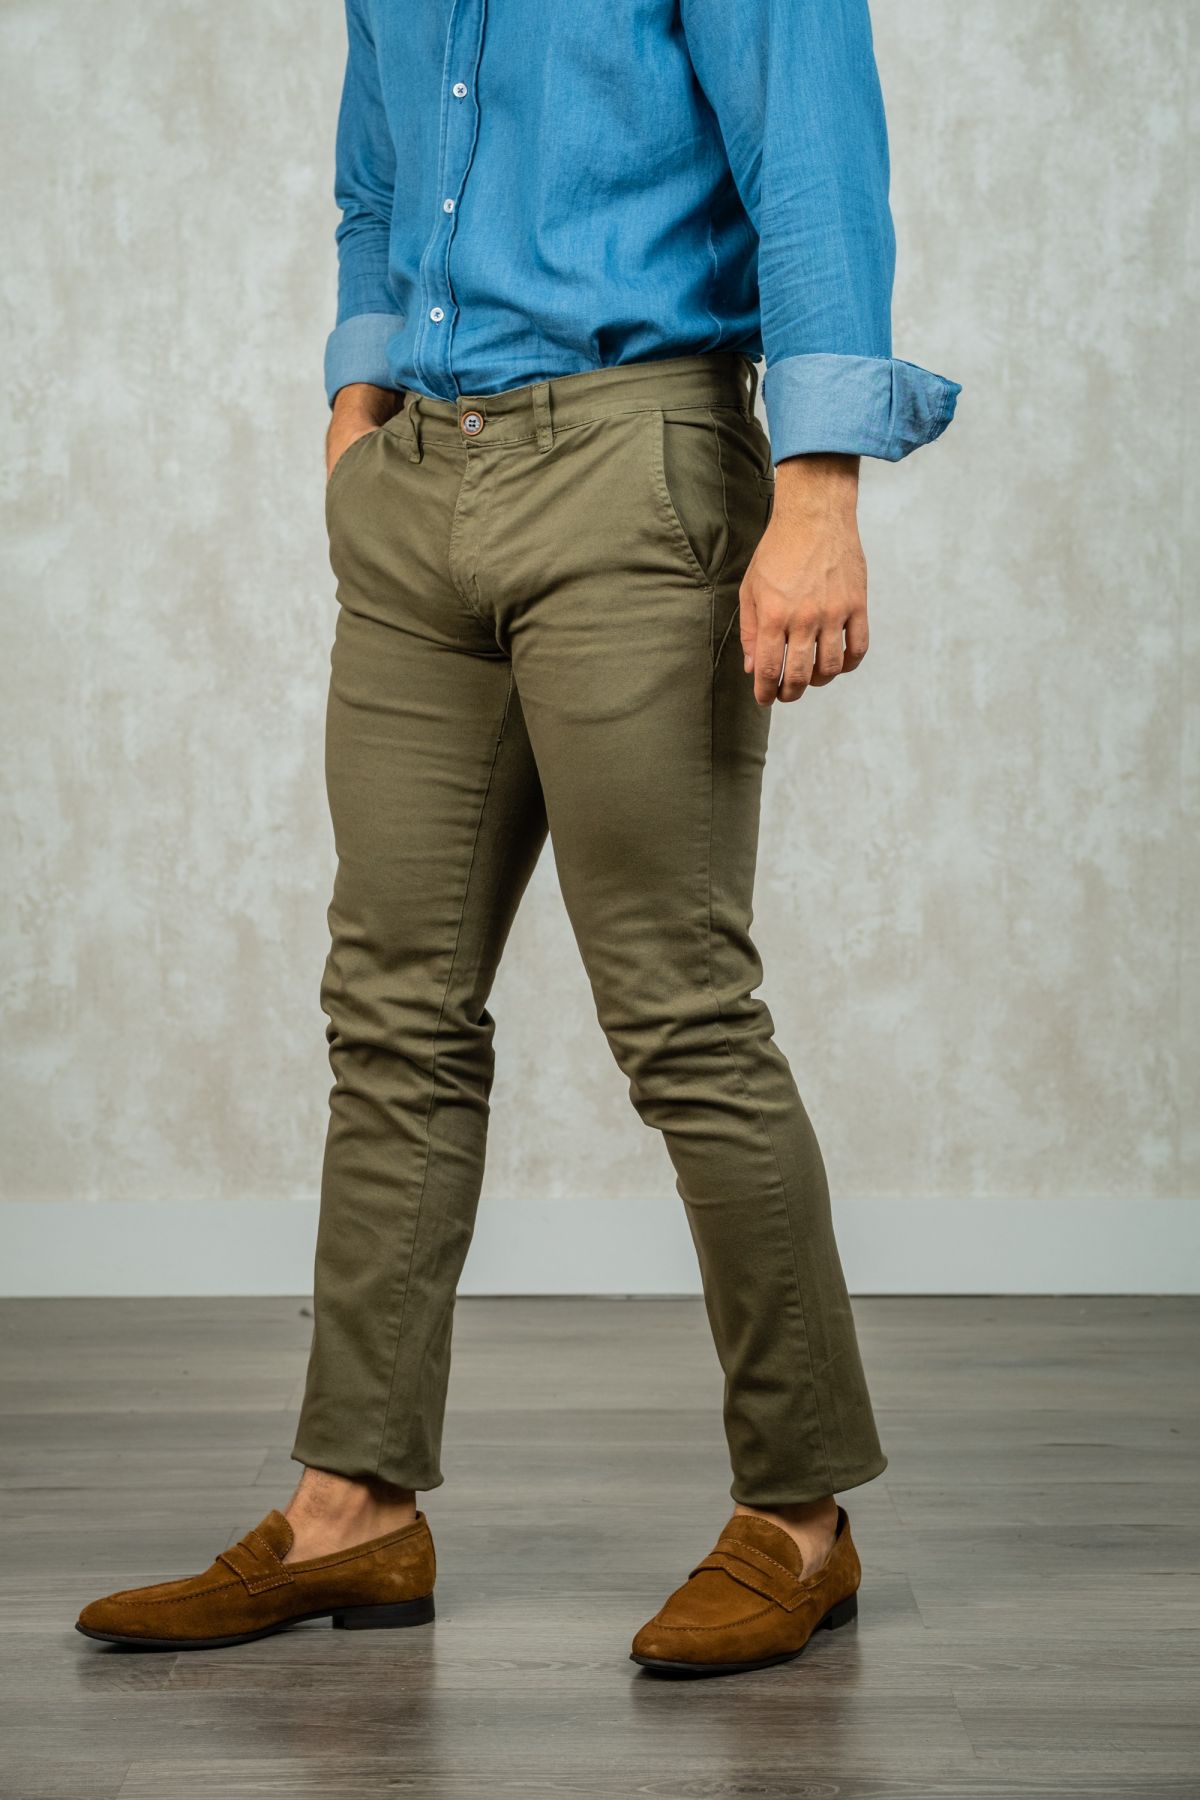 Los pantalones chinos skinny con patrón vivo y color kaki son un estilo de pantalón ajustado al cuerpo con un corte estrecho en las piernas. El color kaki es un tono verde militar oscuro, que es versátil y se puede combinar con una variedad de colores y e